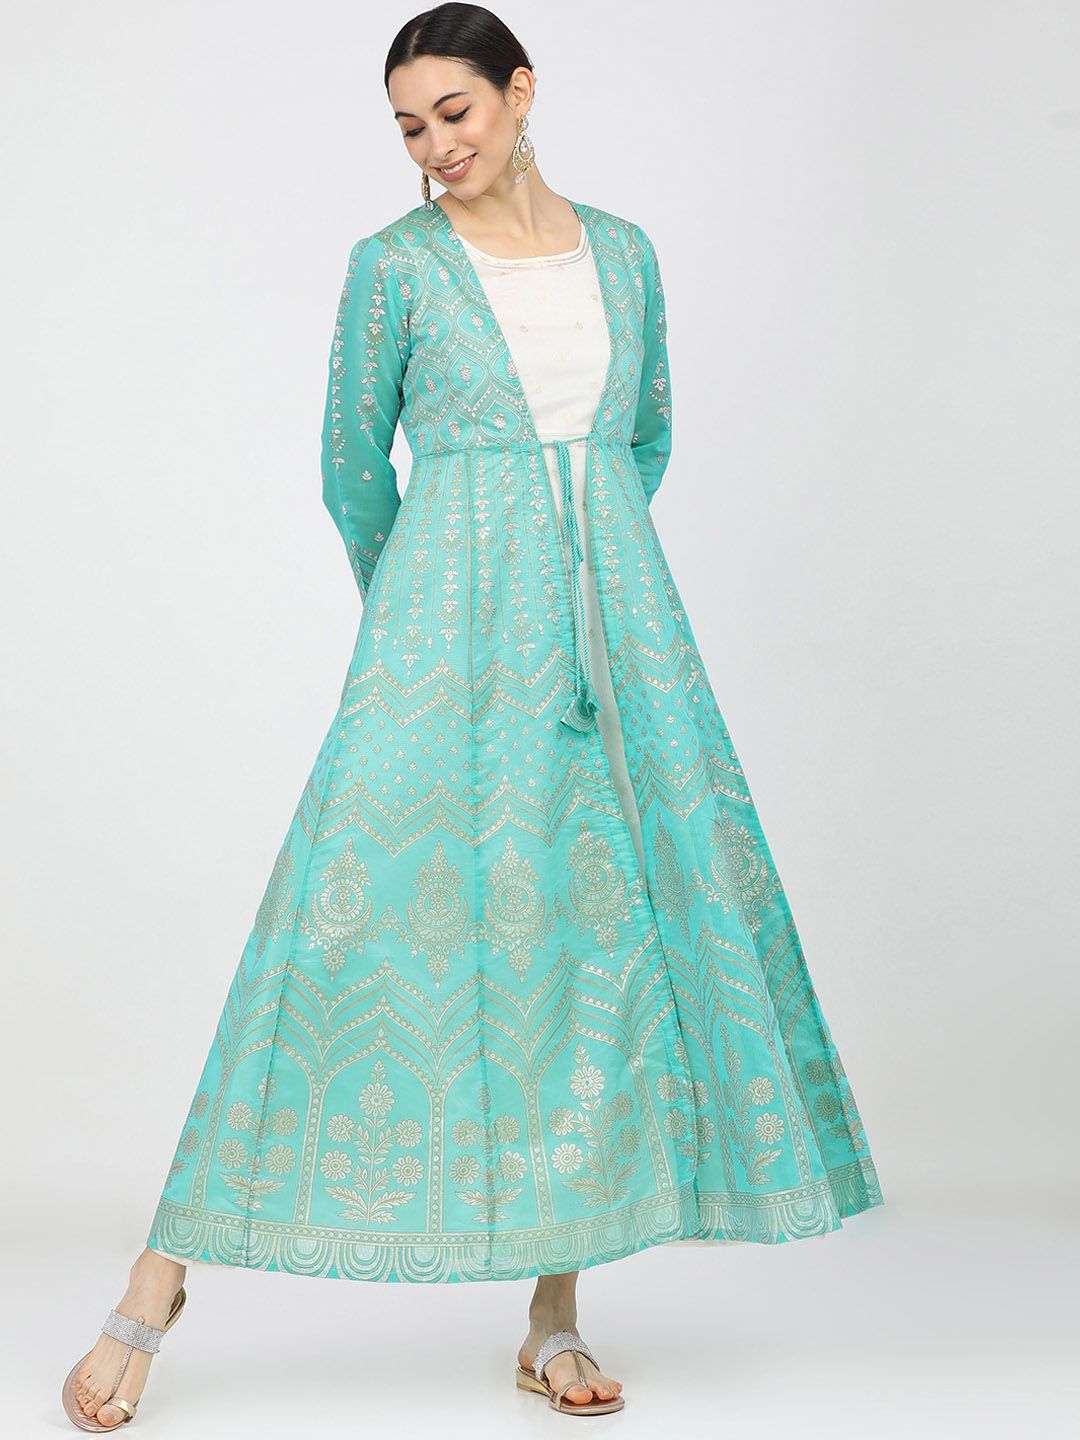 Vishudh Women Turquoise Blue & Off White Ethnic Motifs Printed Anarkali Kurta Price in India